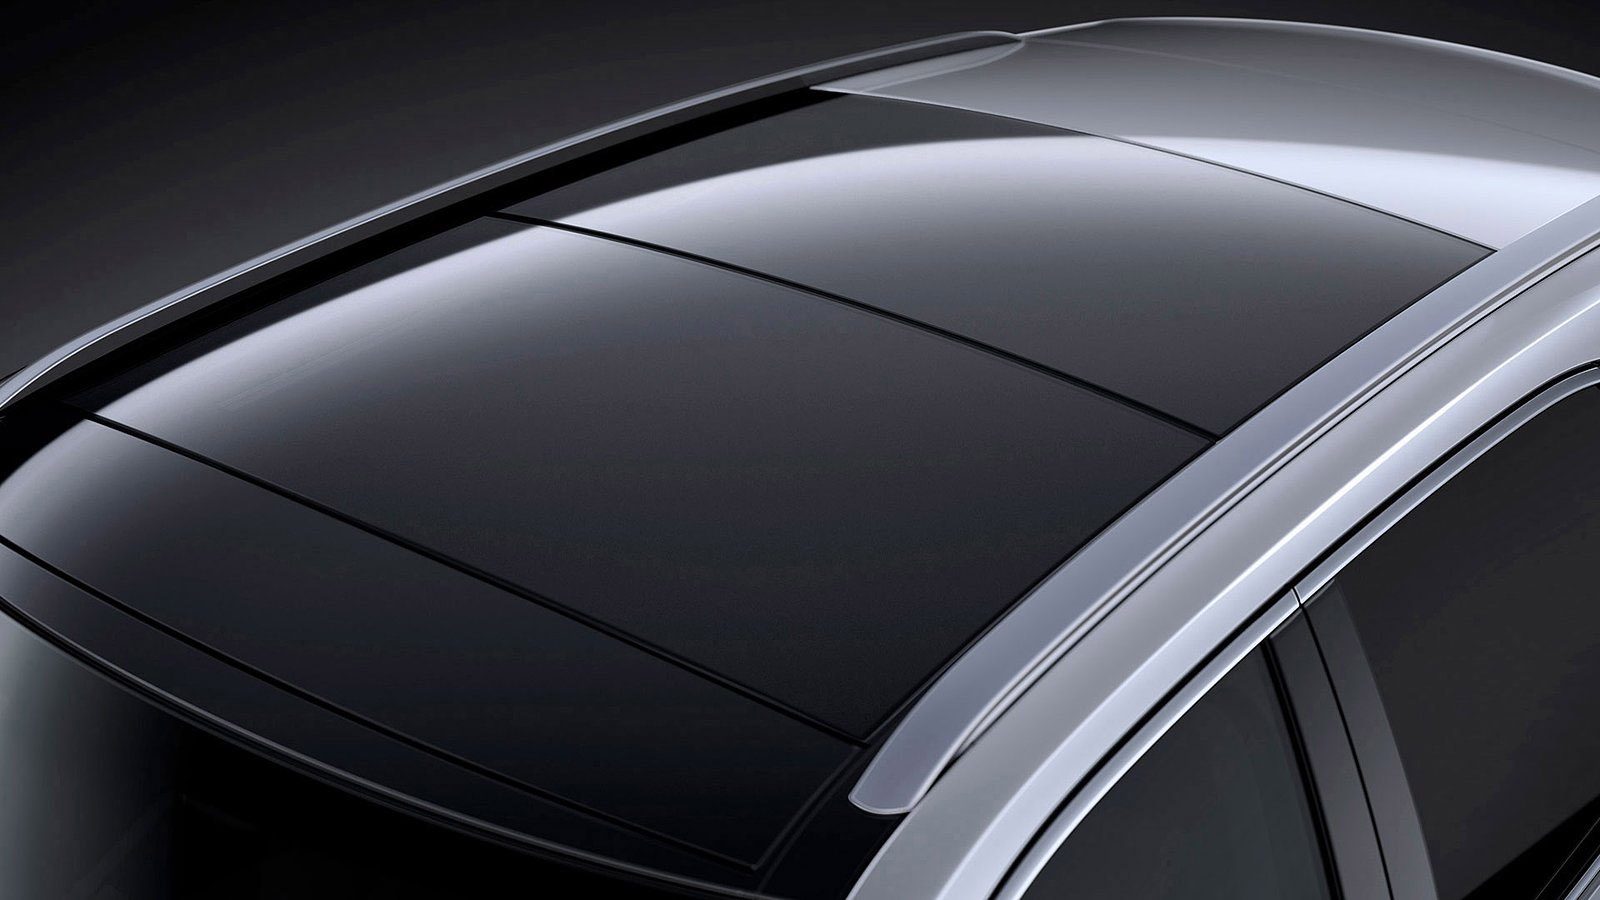 Lexus RX | Radiating Luxury | Ervaar het zelf bij Louwman Exclusive